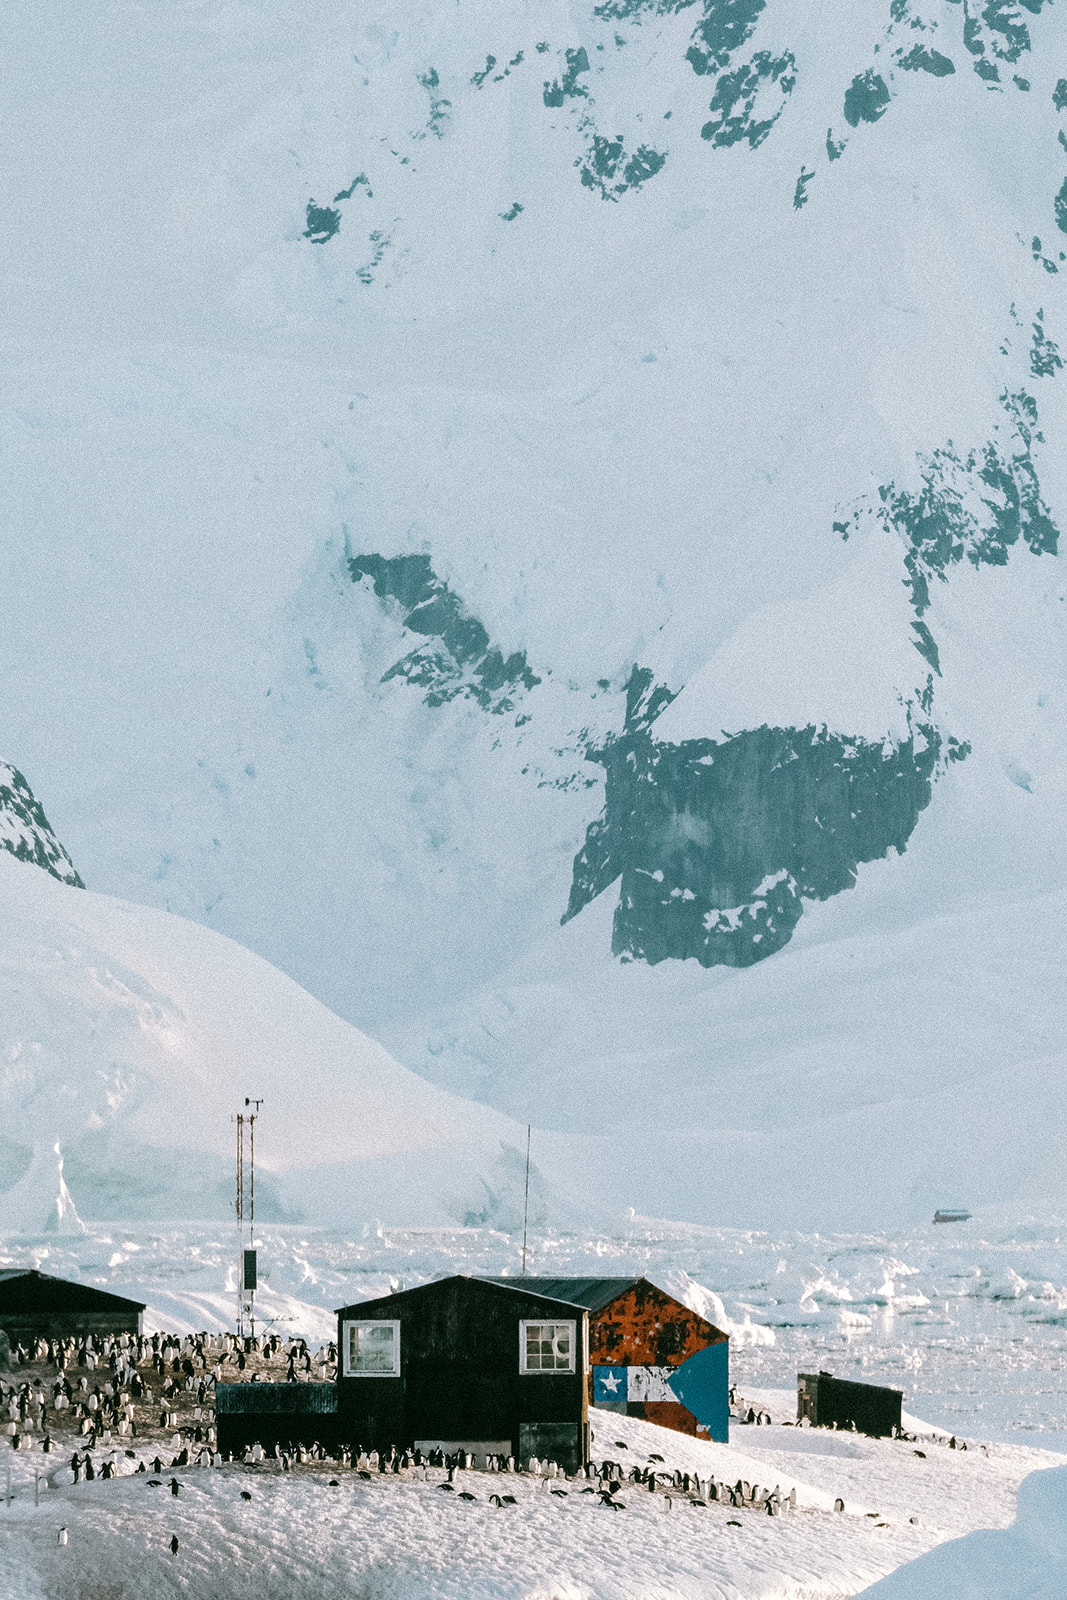 Photography Isabelle Vermeersch for Bellerose in Antarctica